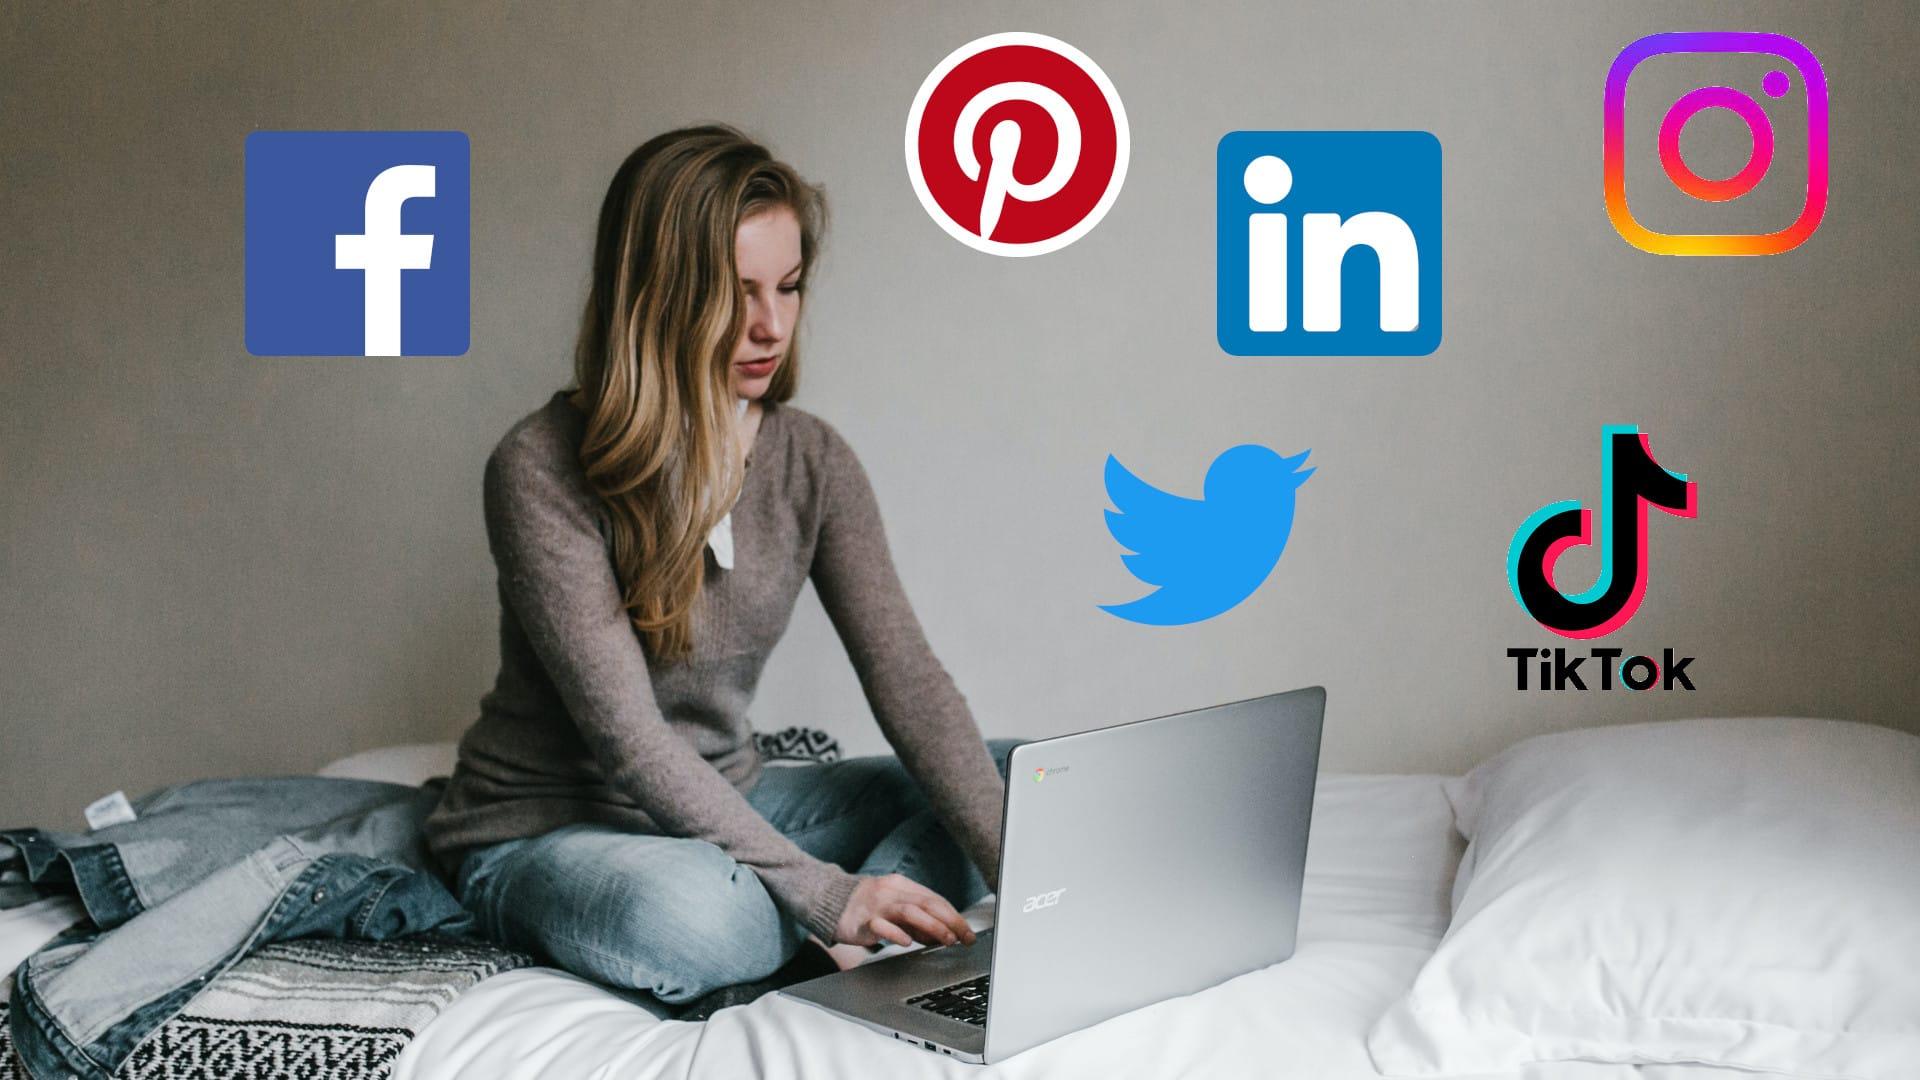 Meisje aan het werp op laptop op bed met verschillende Social media logo's: Facebook, insta, twitter, pinterest, linkedin, tiktok